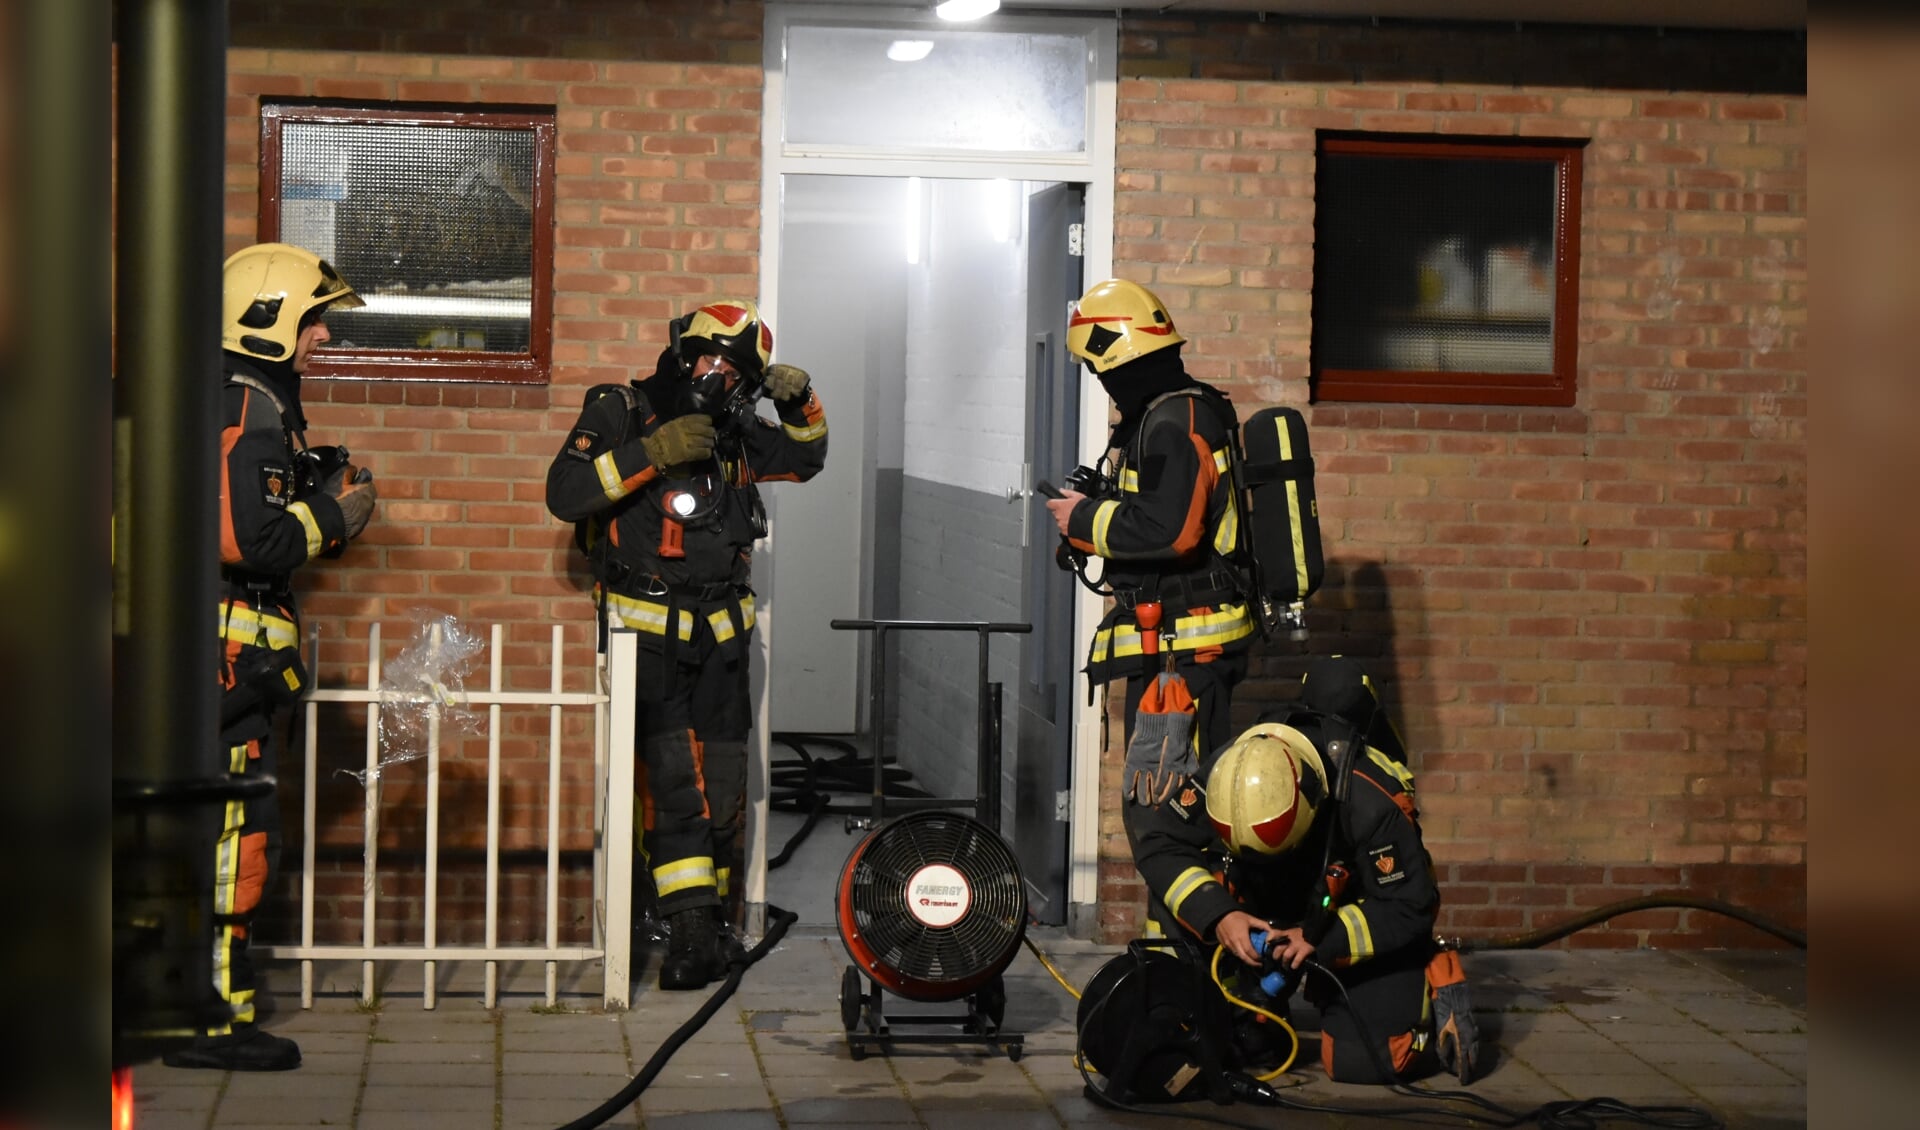 De brandweer werd gealarmeerd voor rook in een kelderbox.
(foto: AS Media)